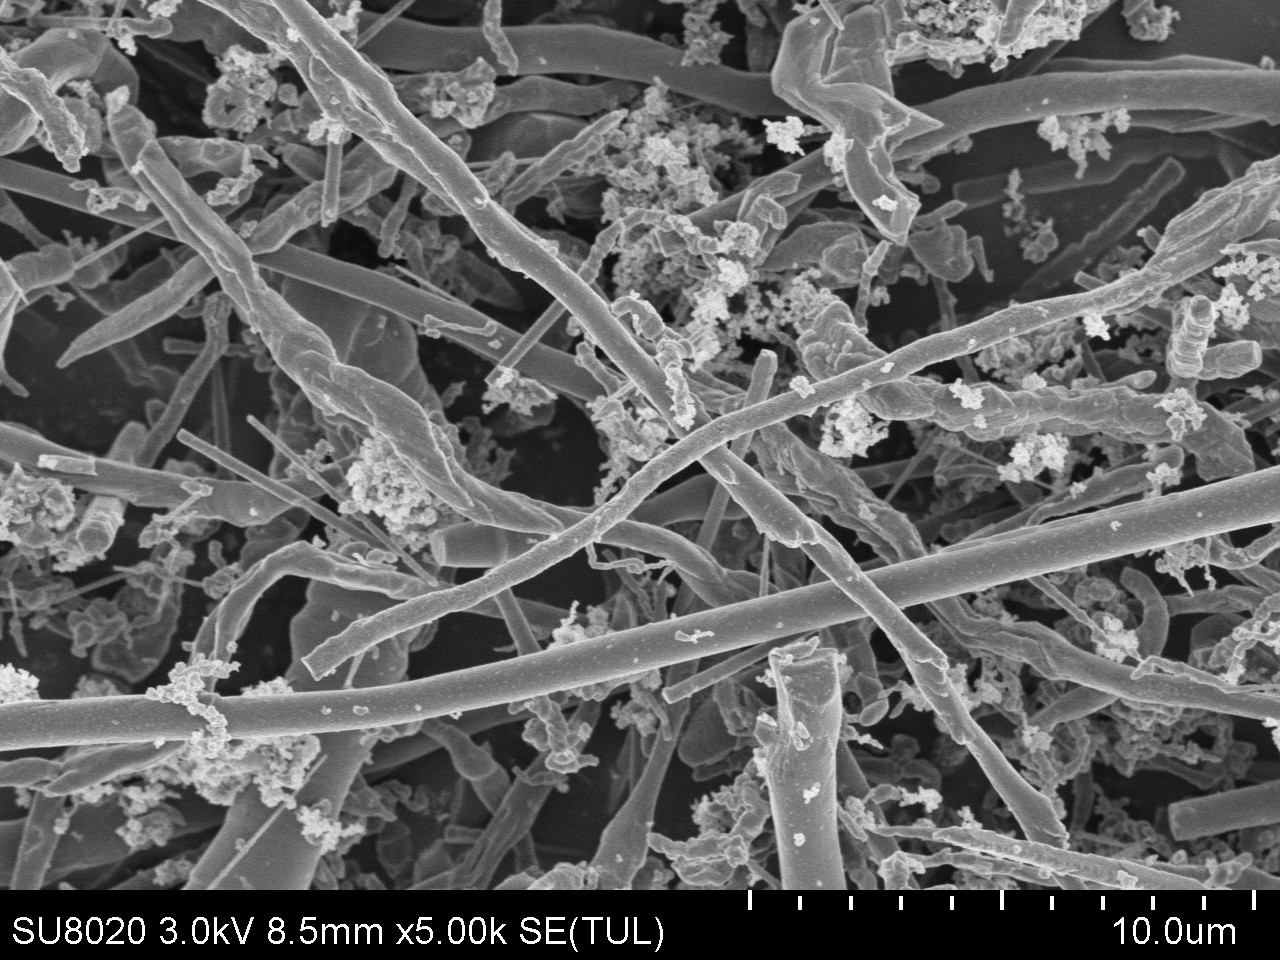 Râu cacbua silicon có thể cải thiện đáng kể tuổi thọ của đá mài kim cương nhựa